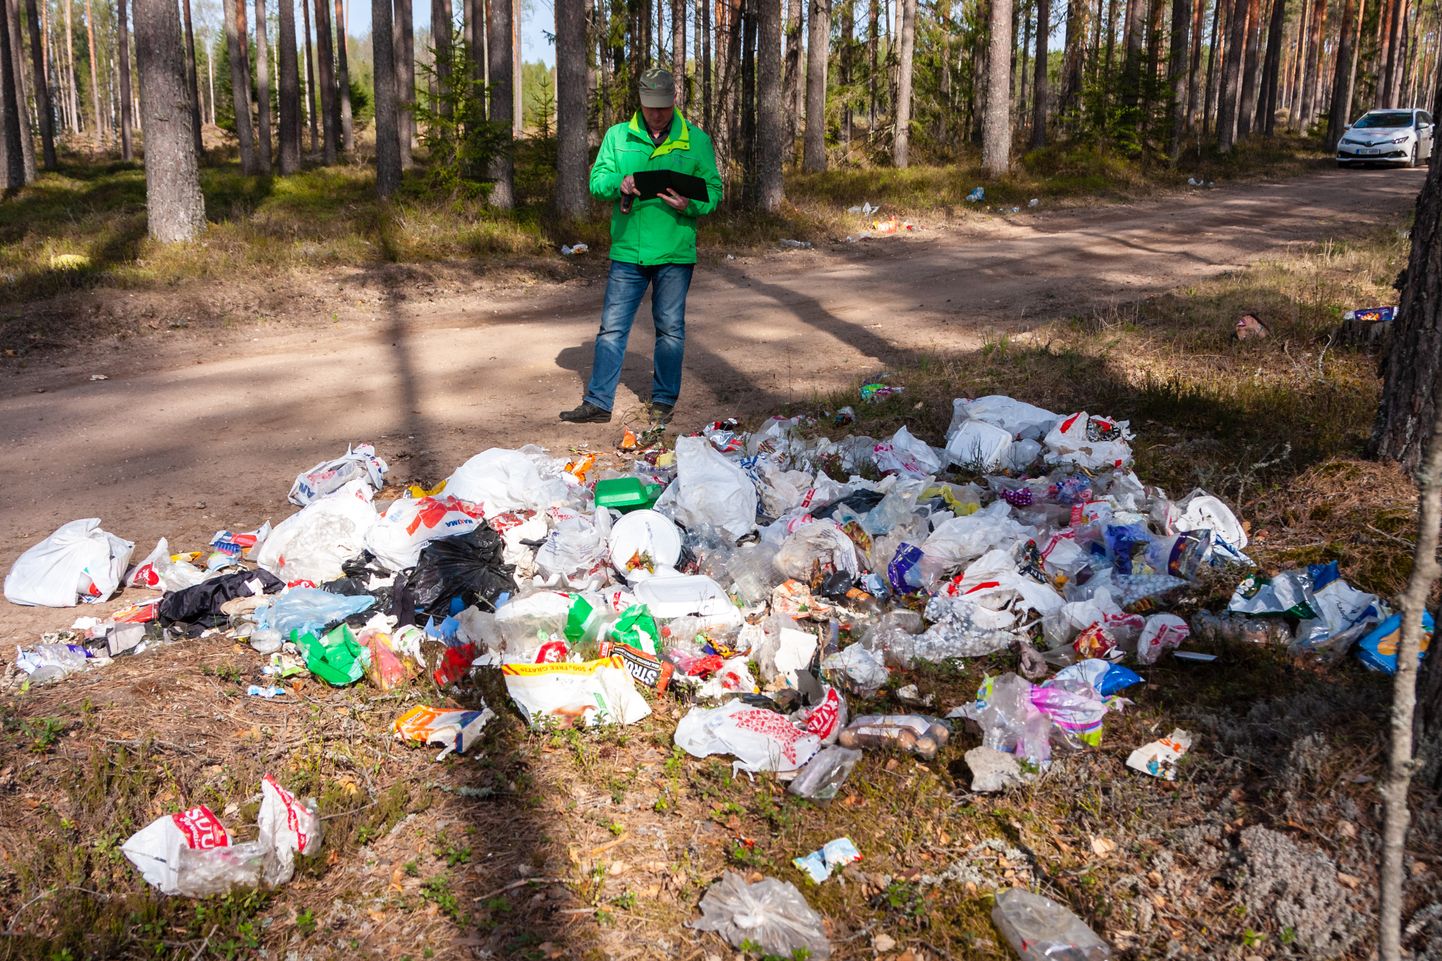 Prügi viiakse hoolimatult loodusesse. Pildil on näha peamiselt pakendijäätmete prügihunnikut Valgast 11 km kaugusel Koiva külas. Metsaülem Risto Sepp jäädvustab asupaika, et korraldada jäätmete koristus ja äravedu.